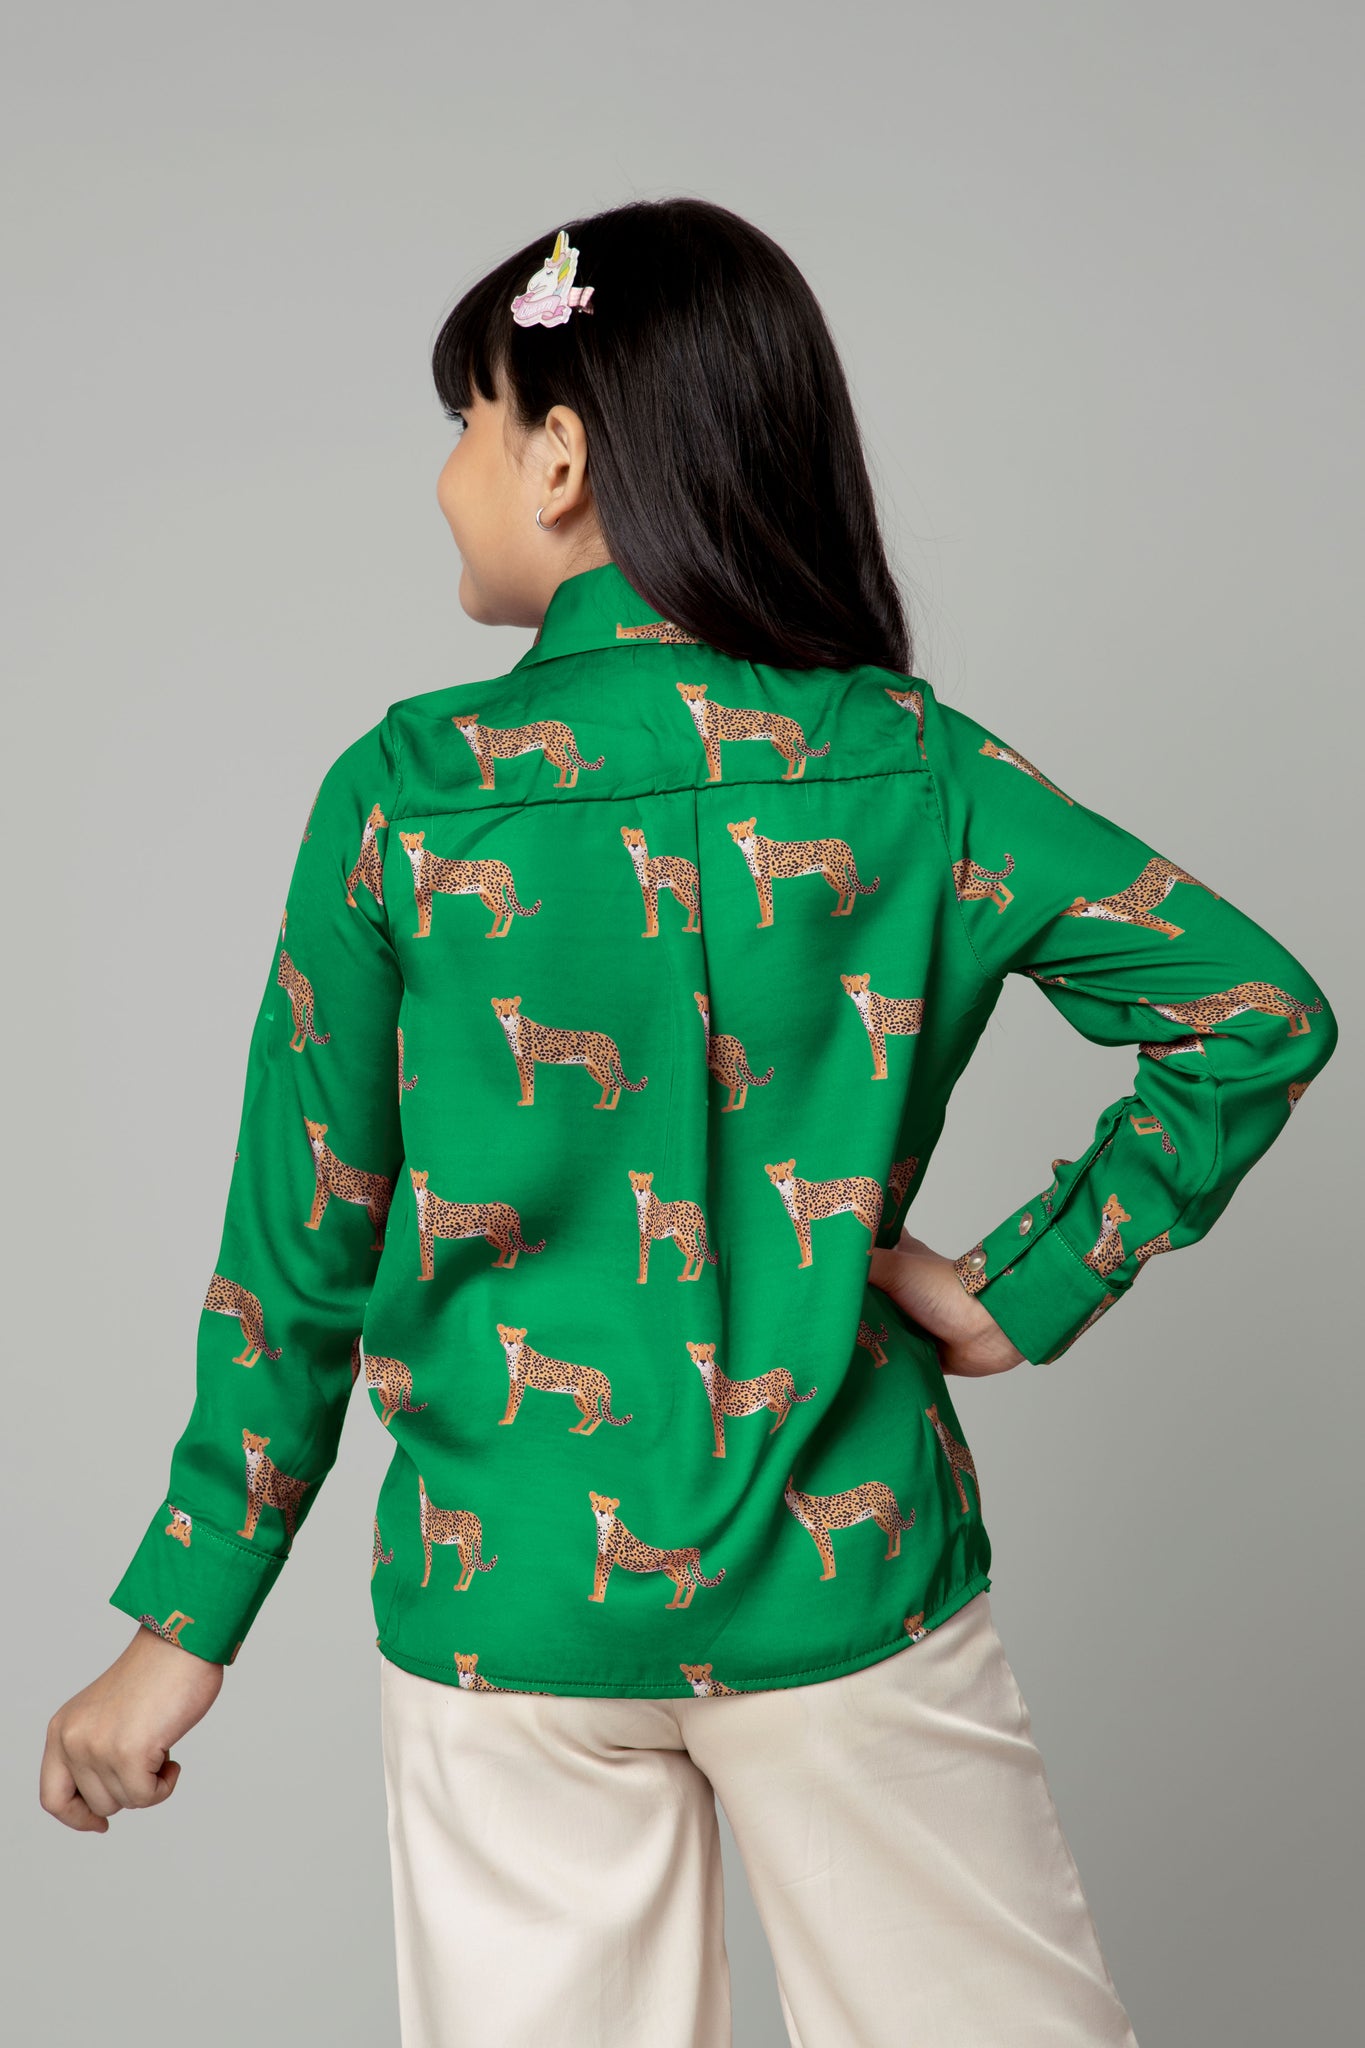 Green Leopard Print Shirt for Girls